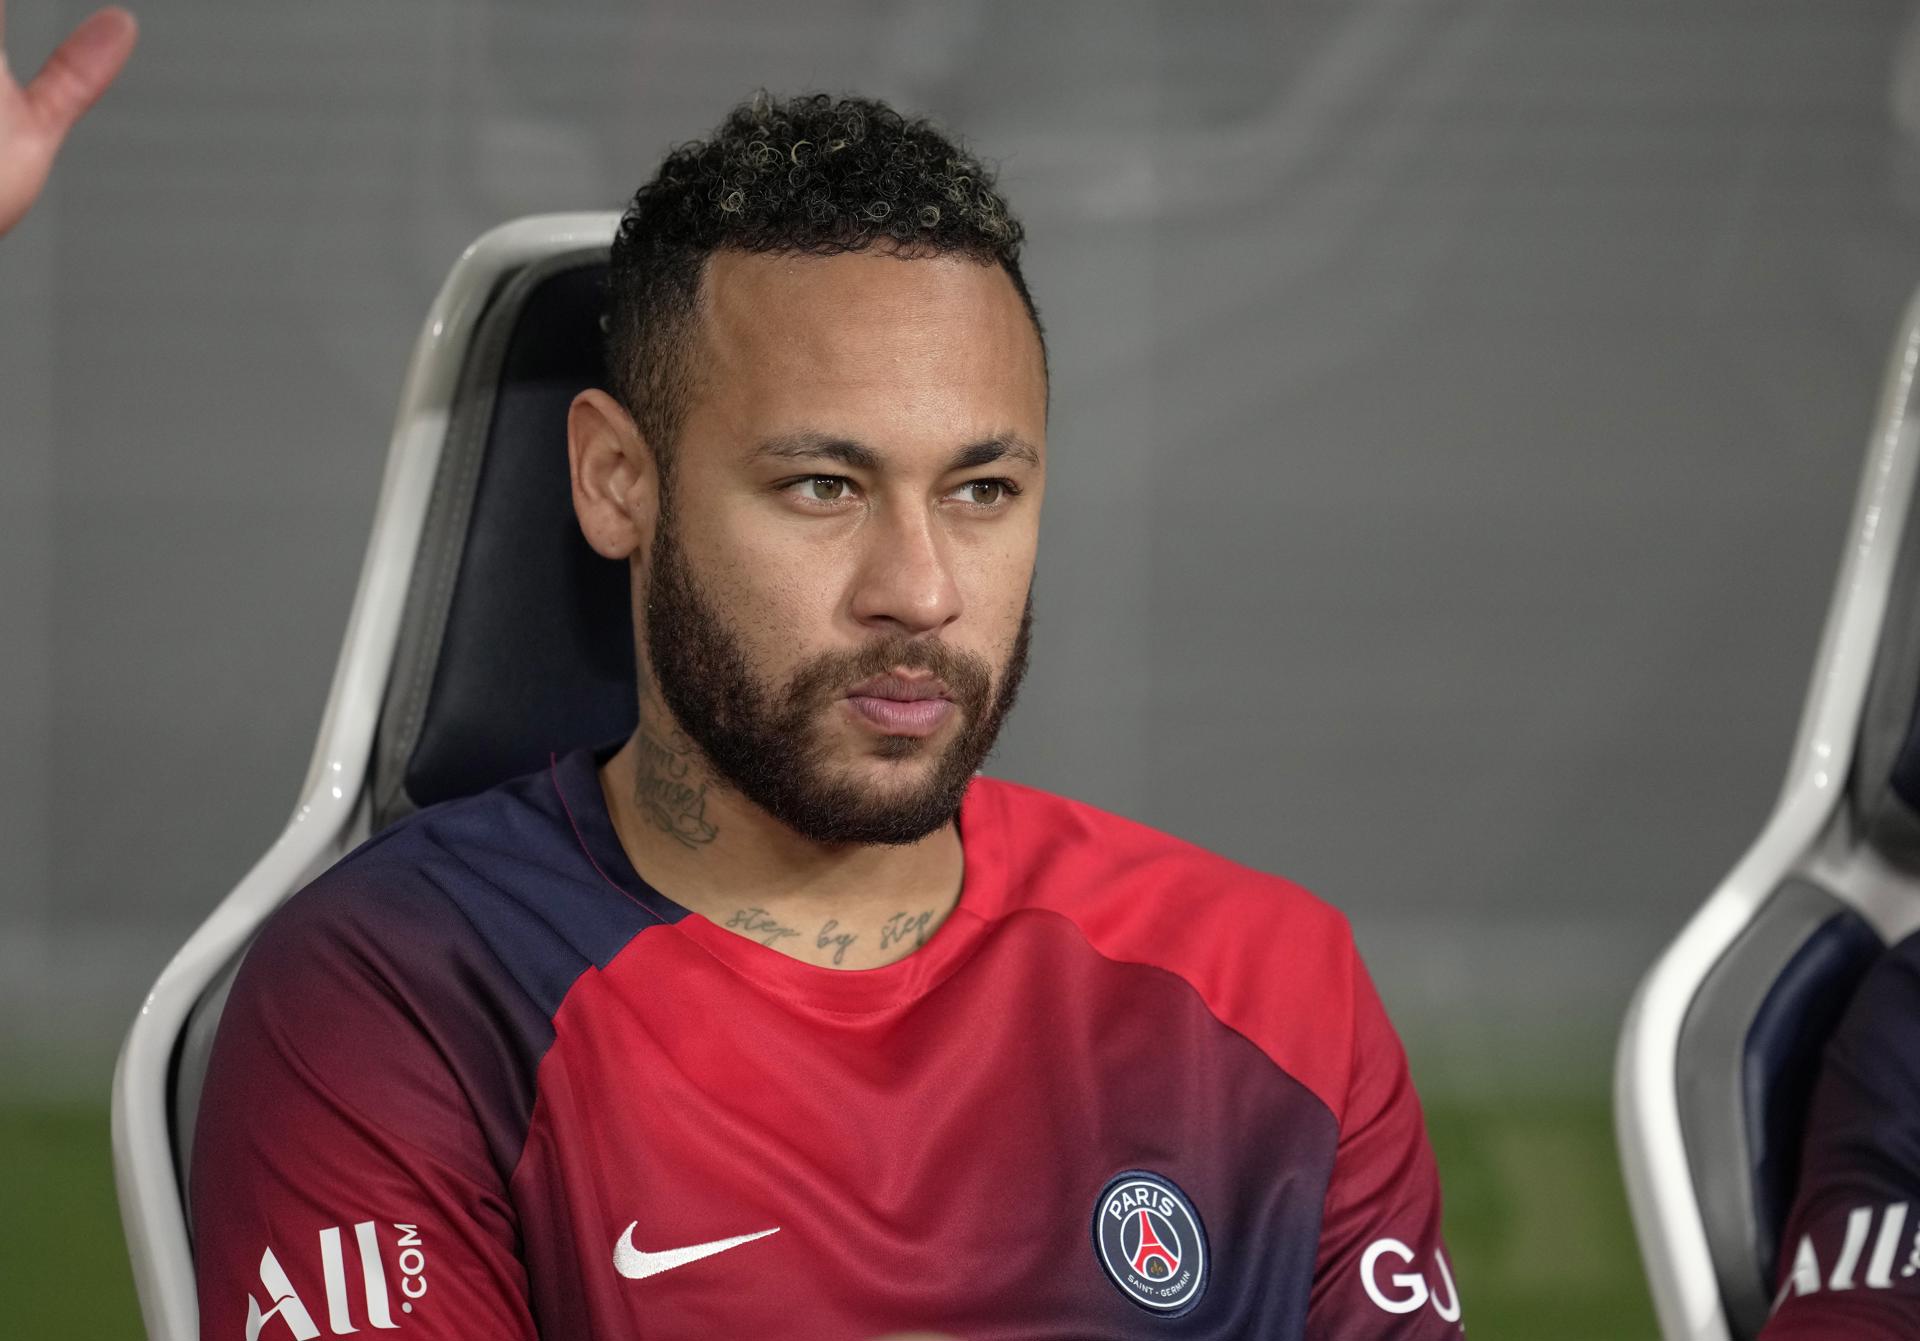 Acuerdo entre Neymar y el Al-Hilal saudí para su traspaso desde el PSG, según la prensa